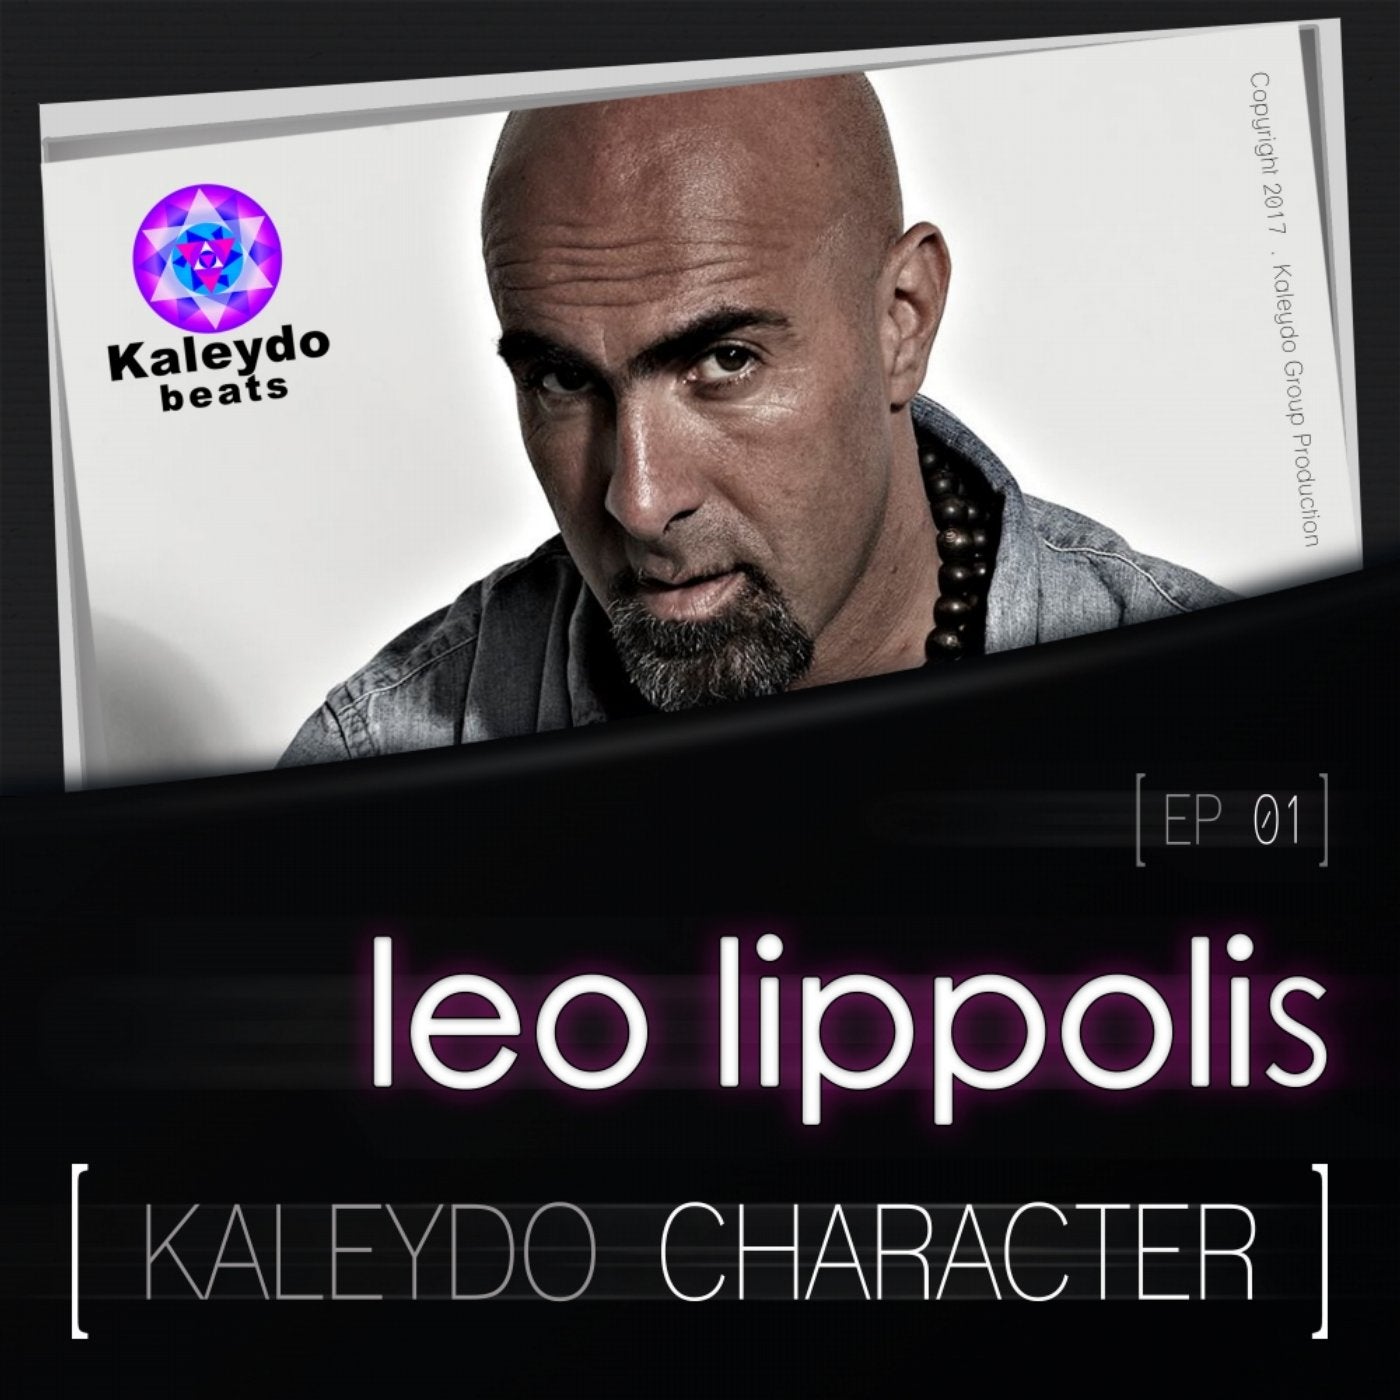 Kaleydo Character: Leo Lippolis EP 1